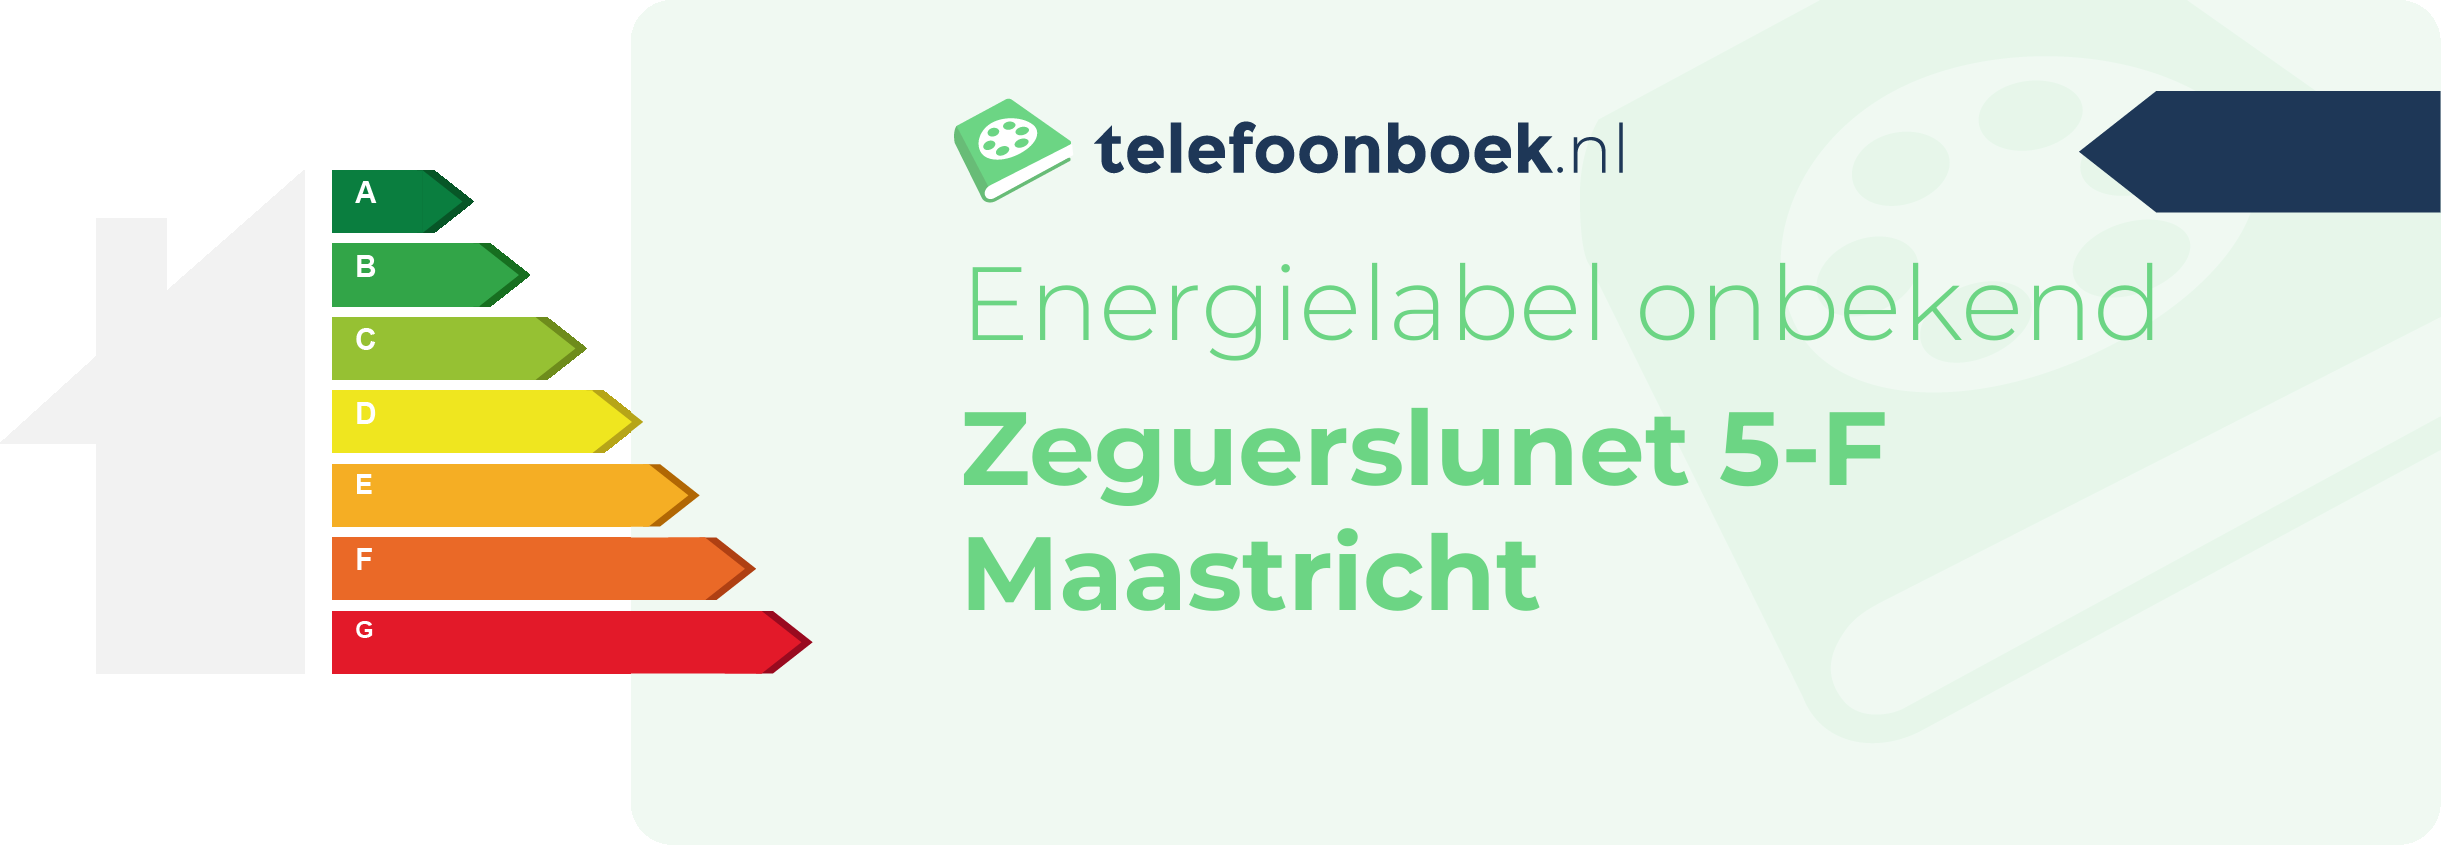 Energielabel Zeguerslunet 5-F Maastricht